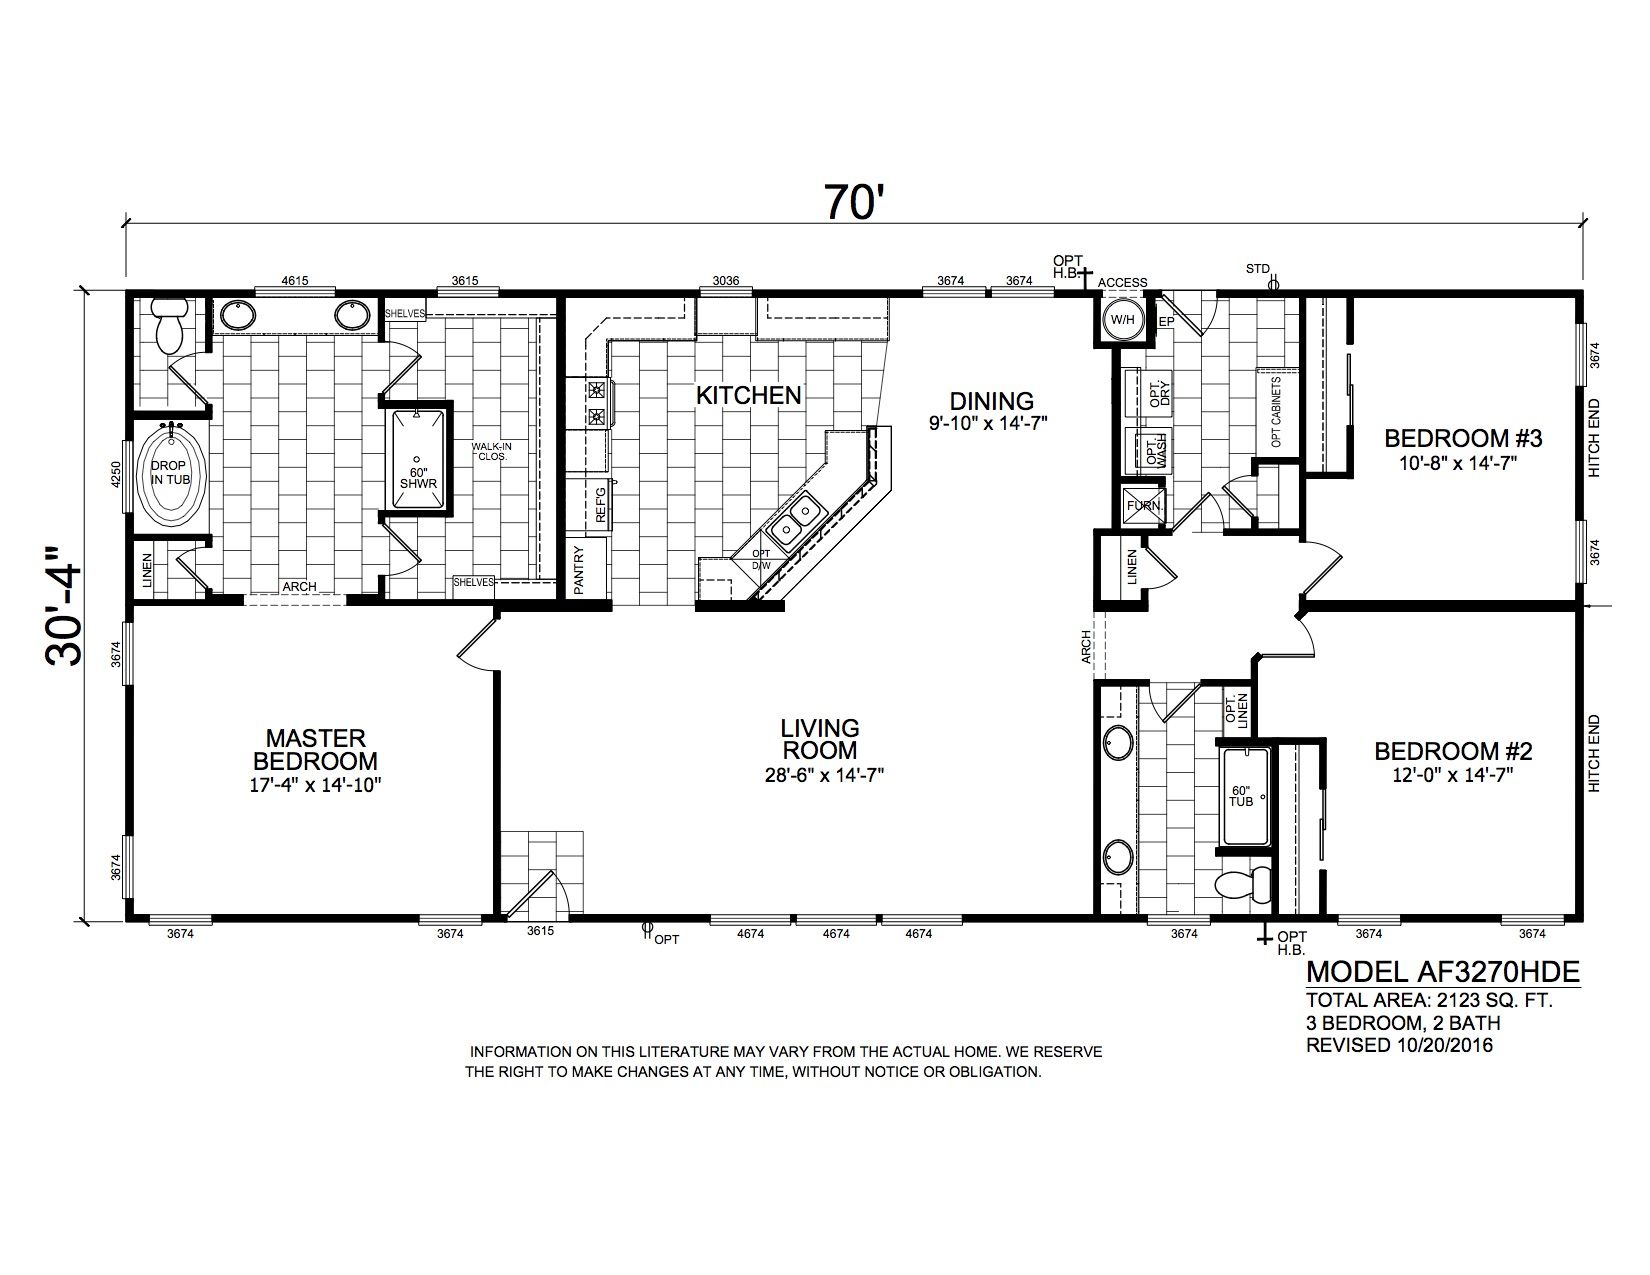 Homes Direct Modular Homes - Model AF3270HDE - Floorplan